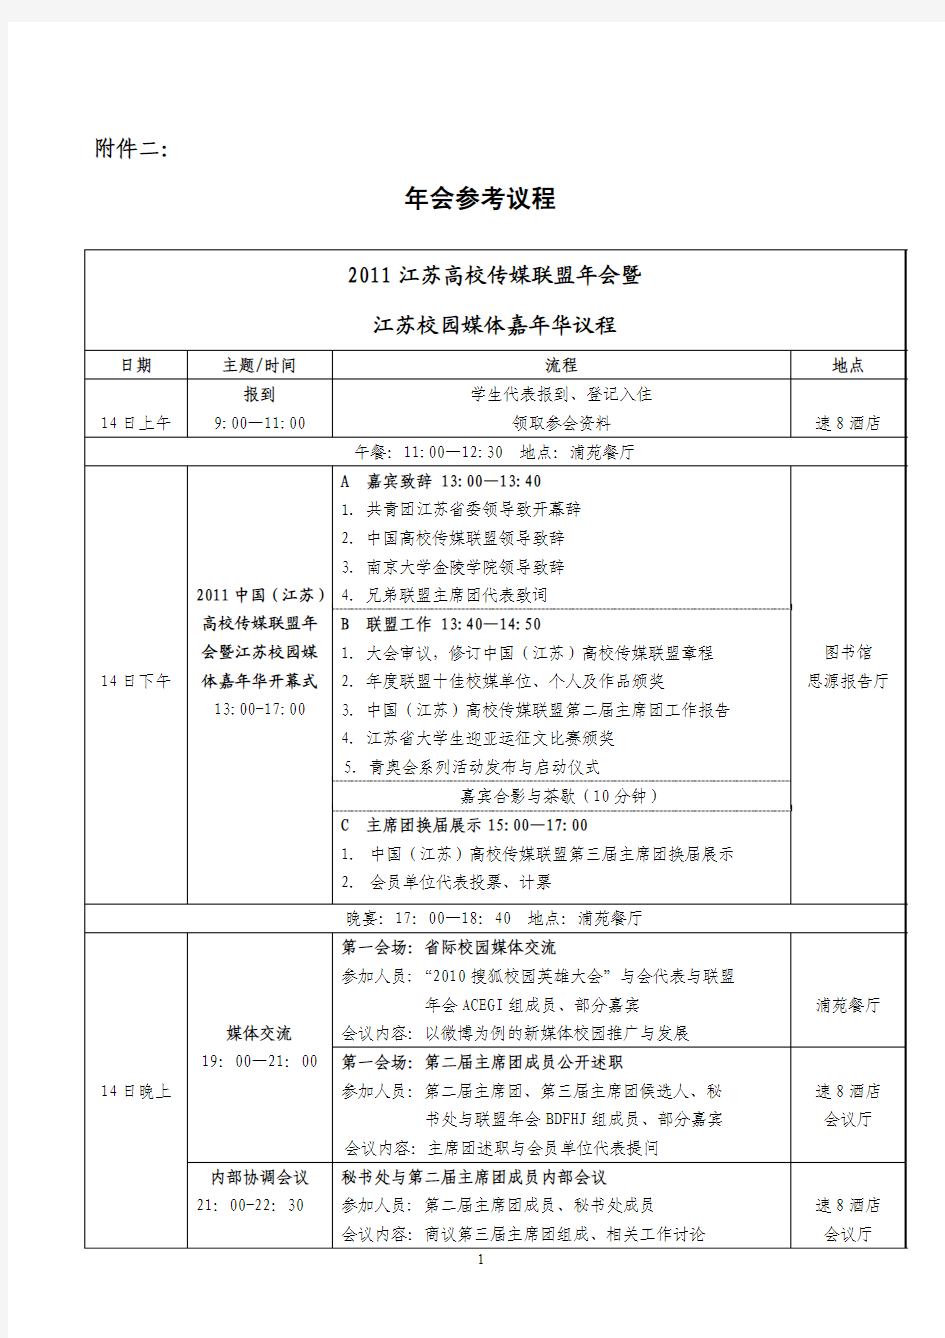 【2011江苏校媒年会】邀请函附件二：年会参考议程(1)